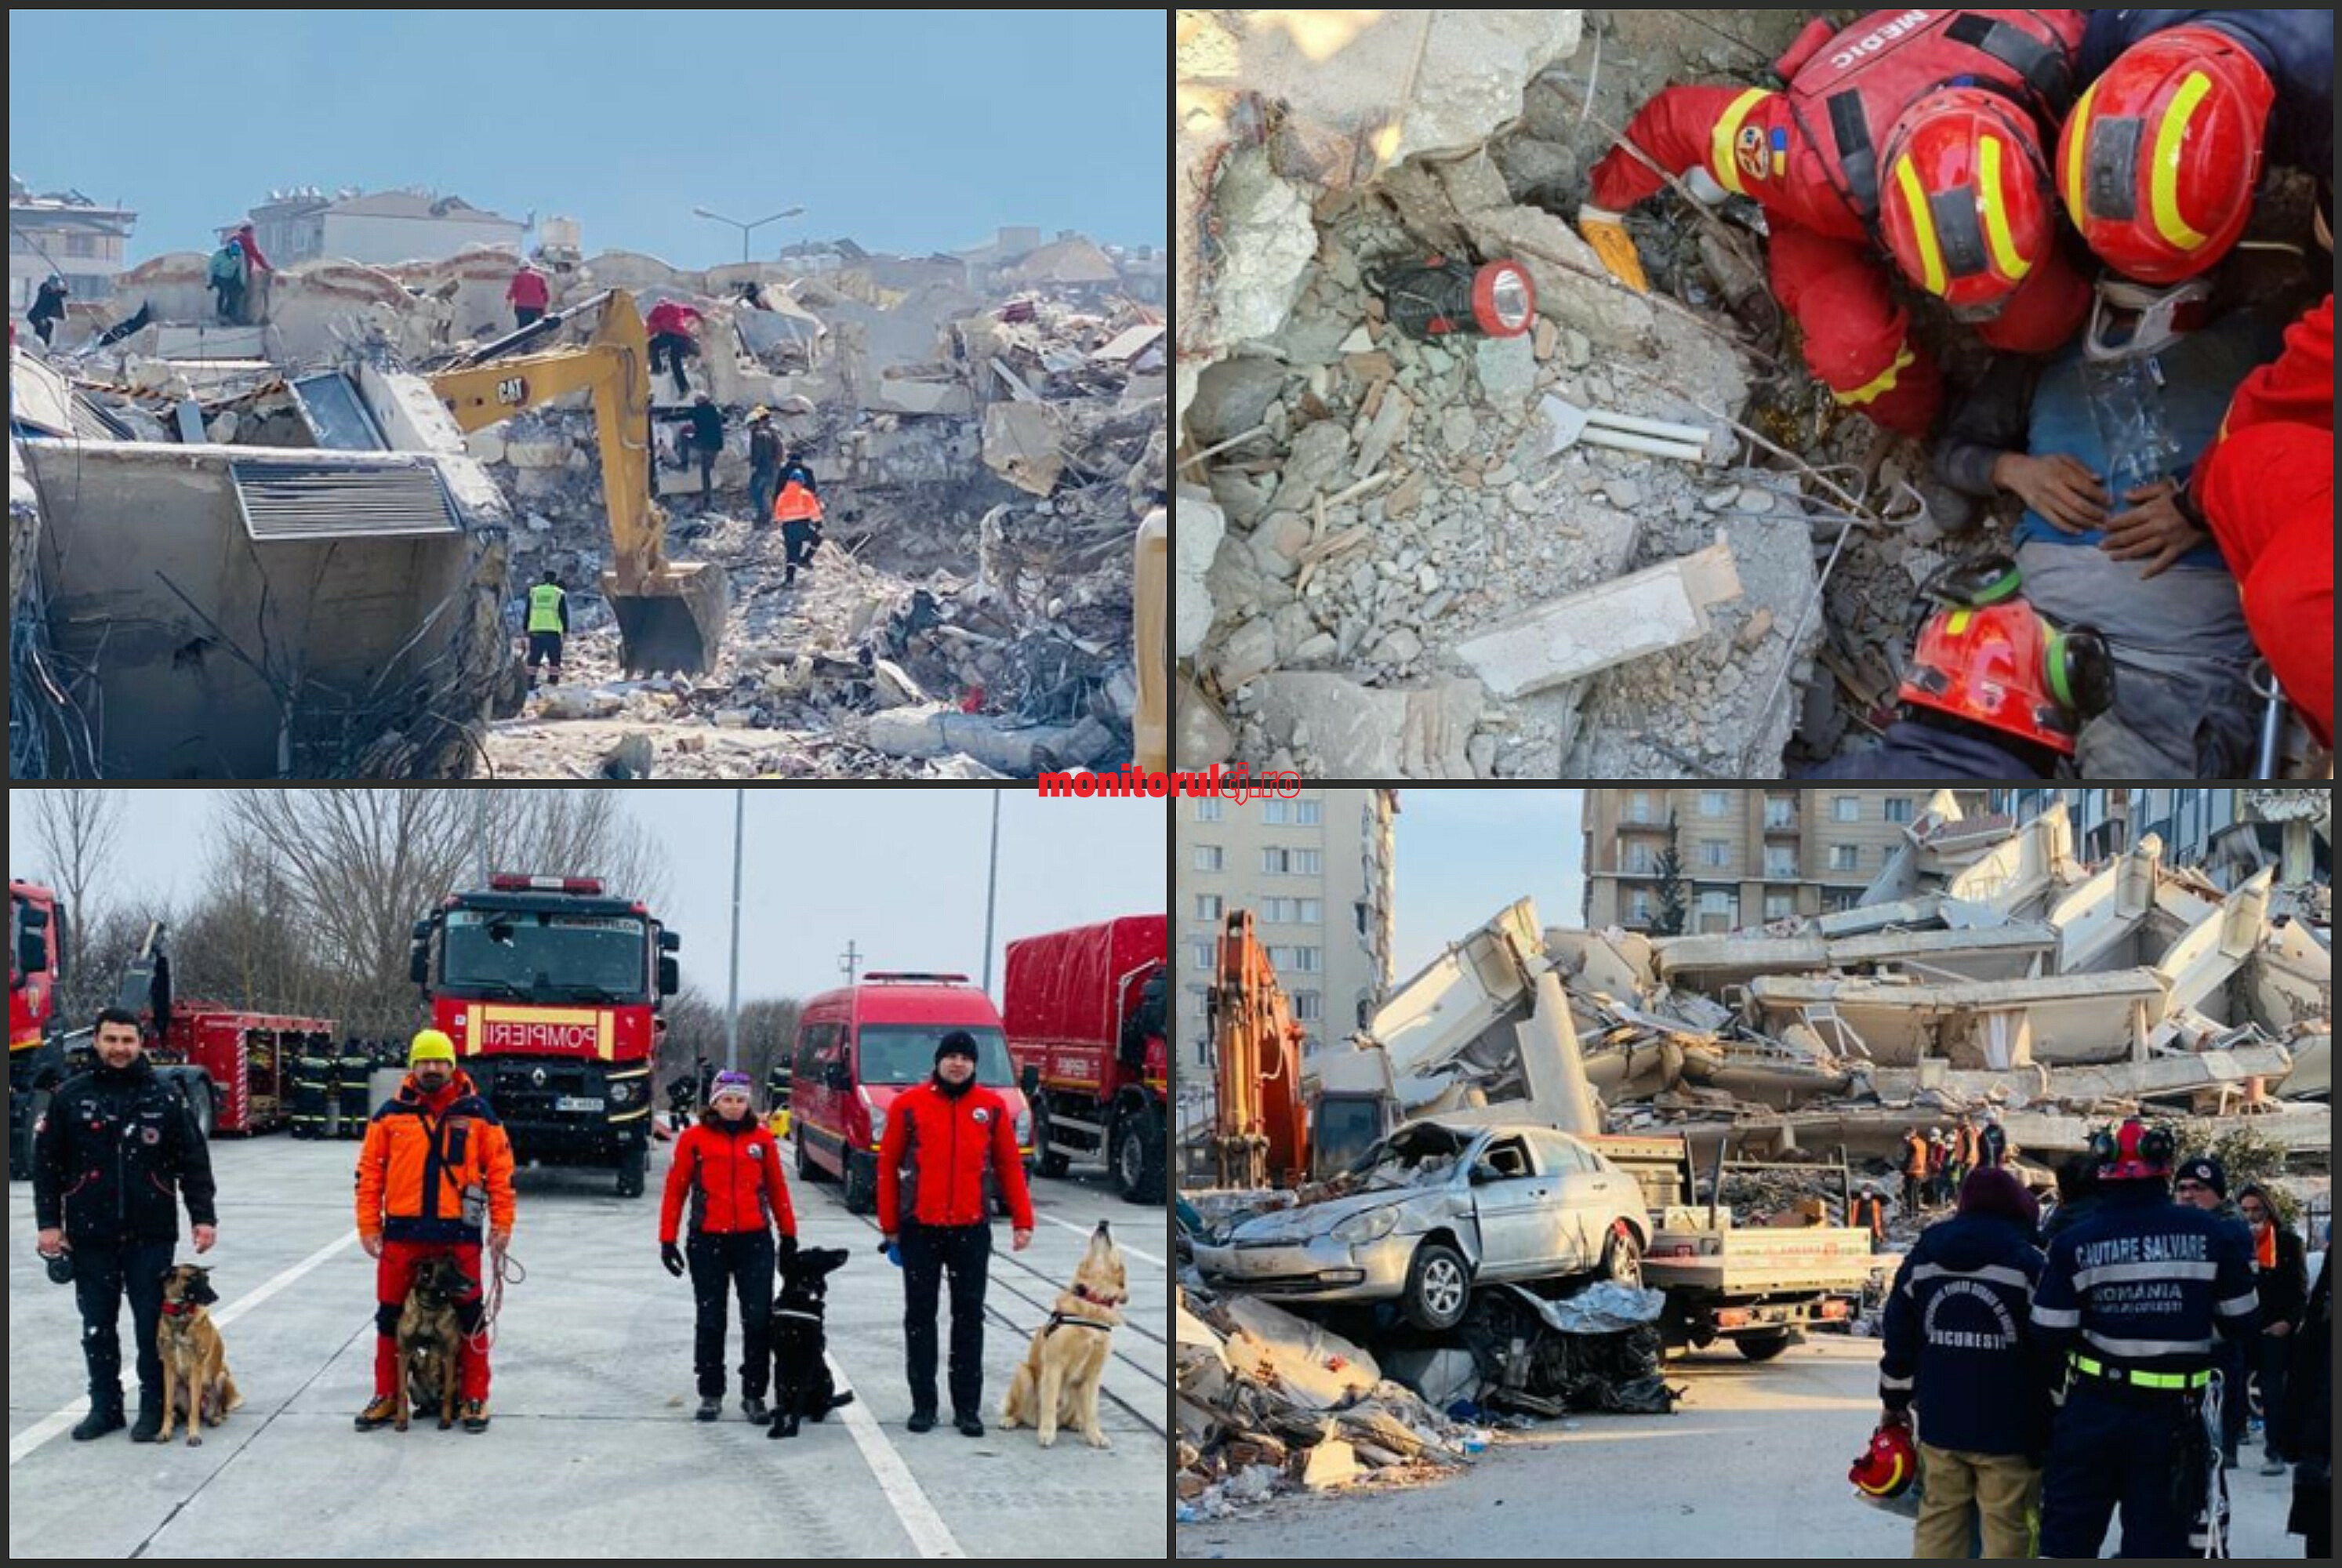 Salvatori din Cluj, în sprijin în Turcia în urma cutremurelor / Foto: Rareș Urs - arhivă personală